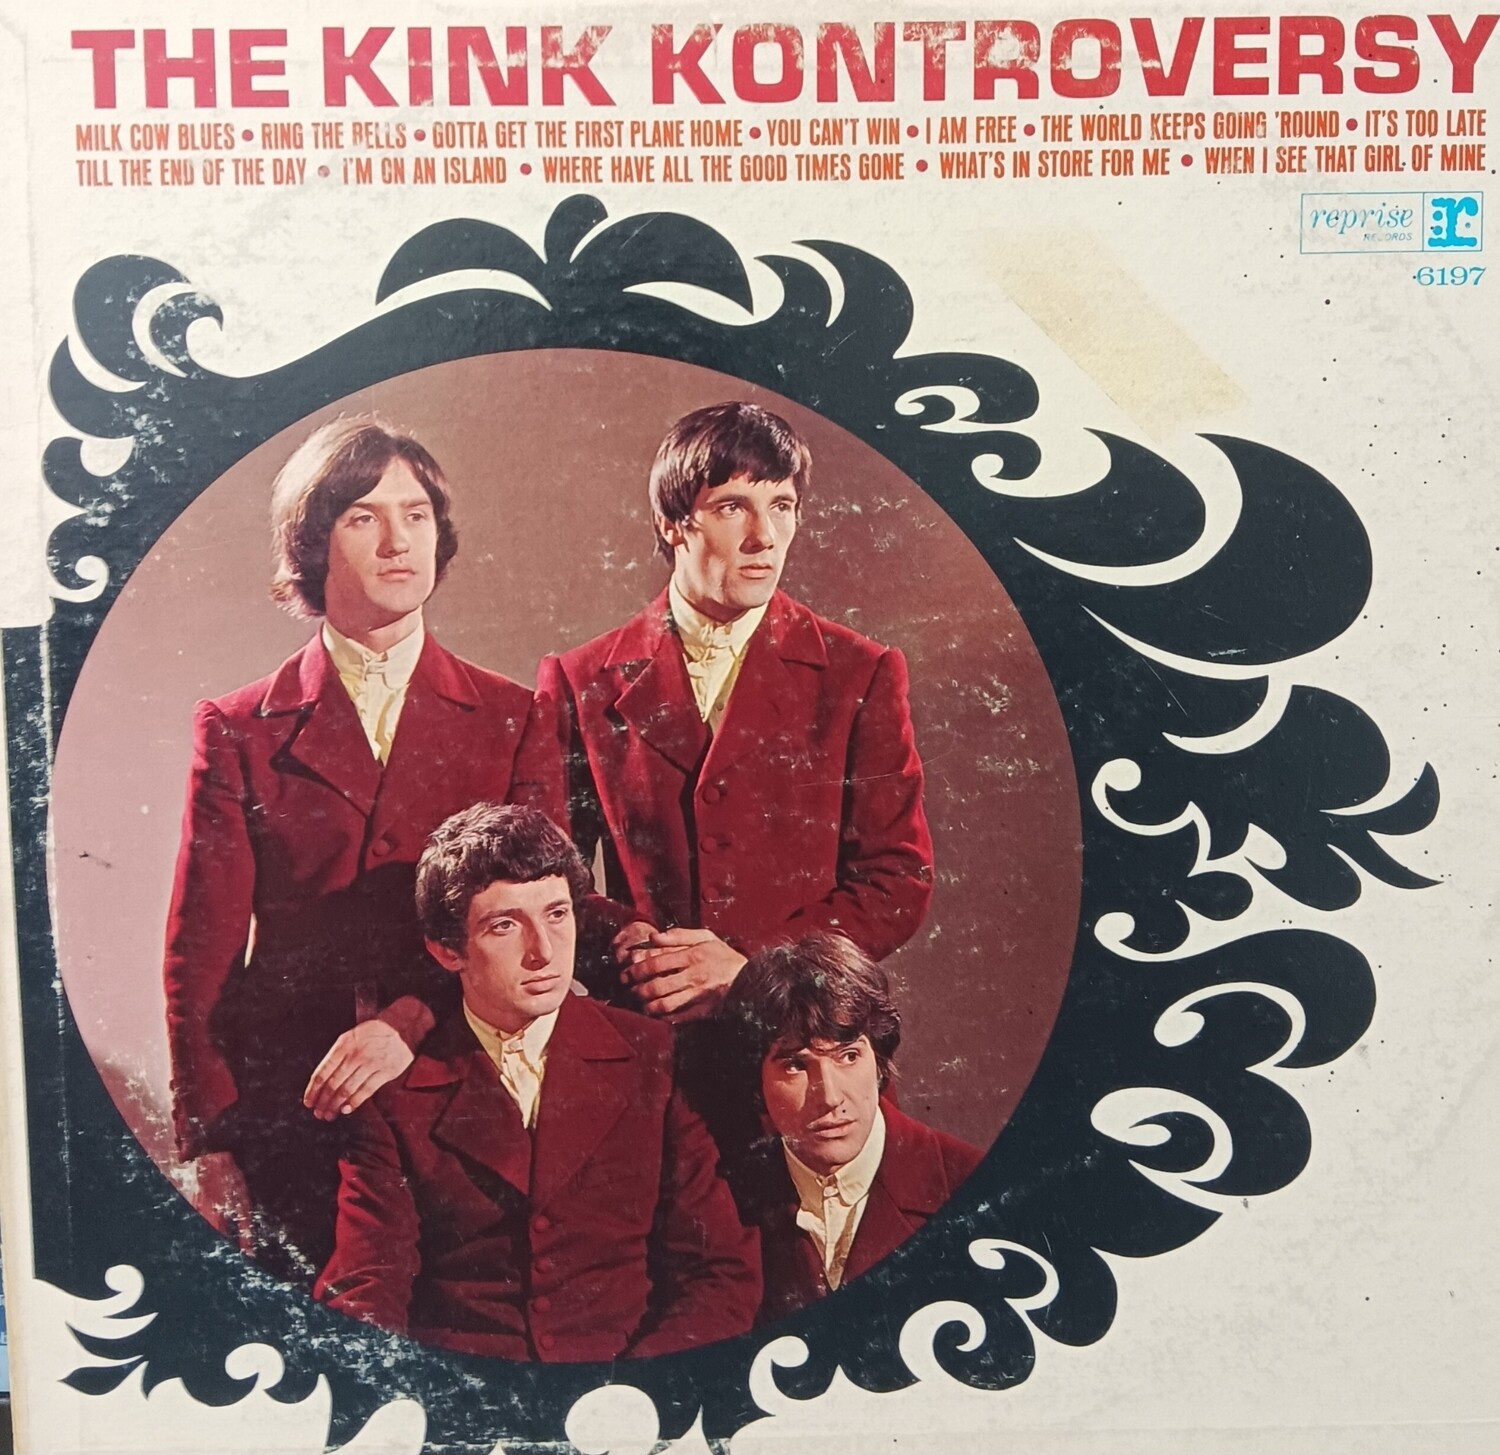 THE KINKS - The Kinks Kontroversy